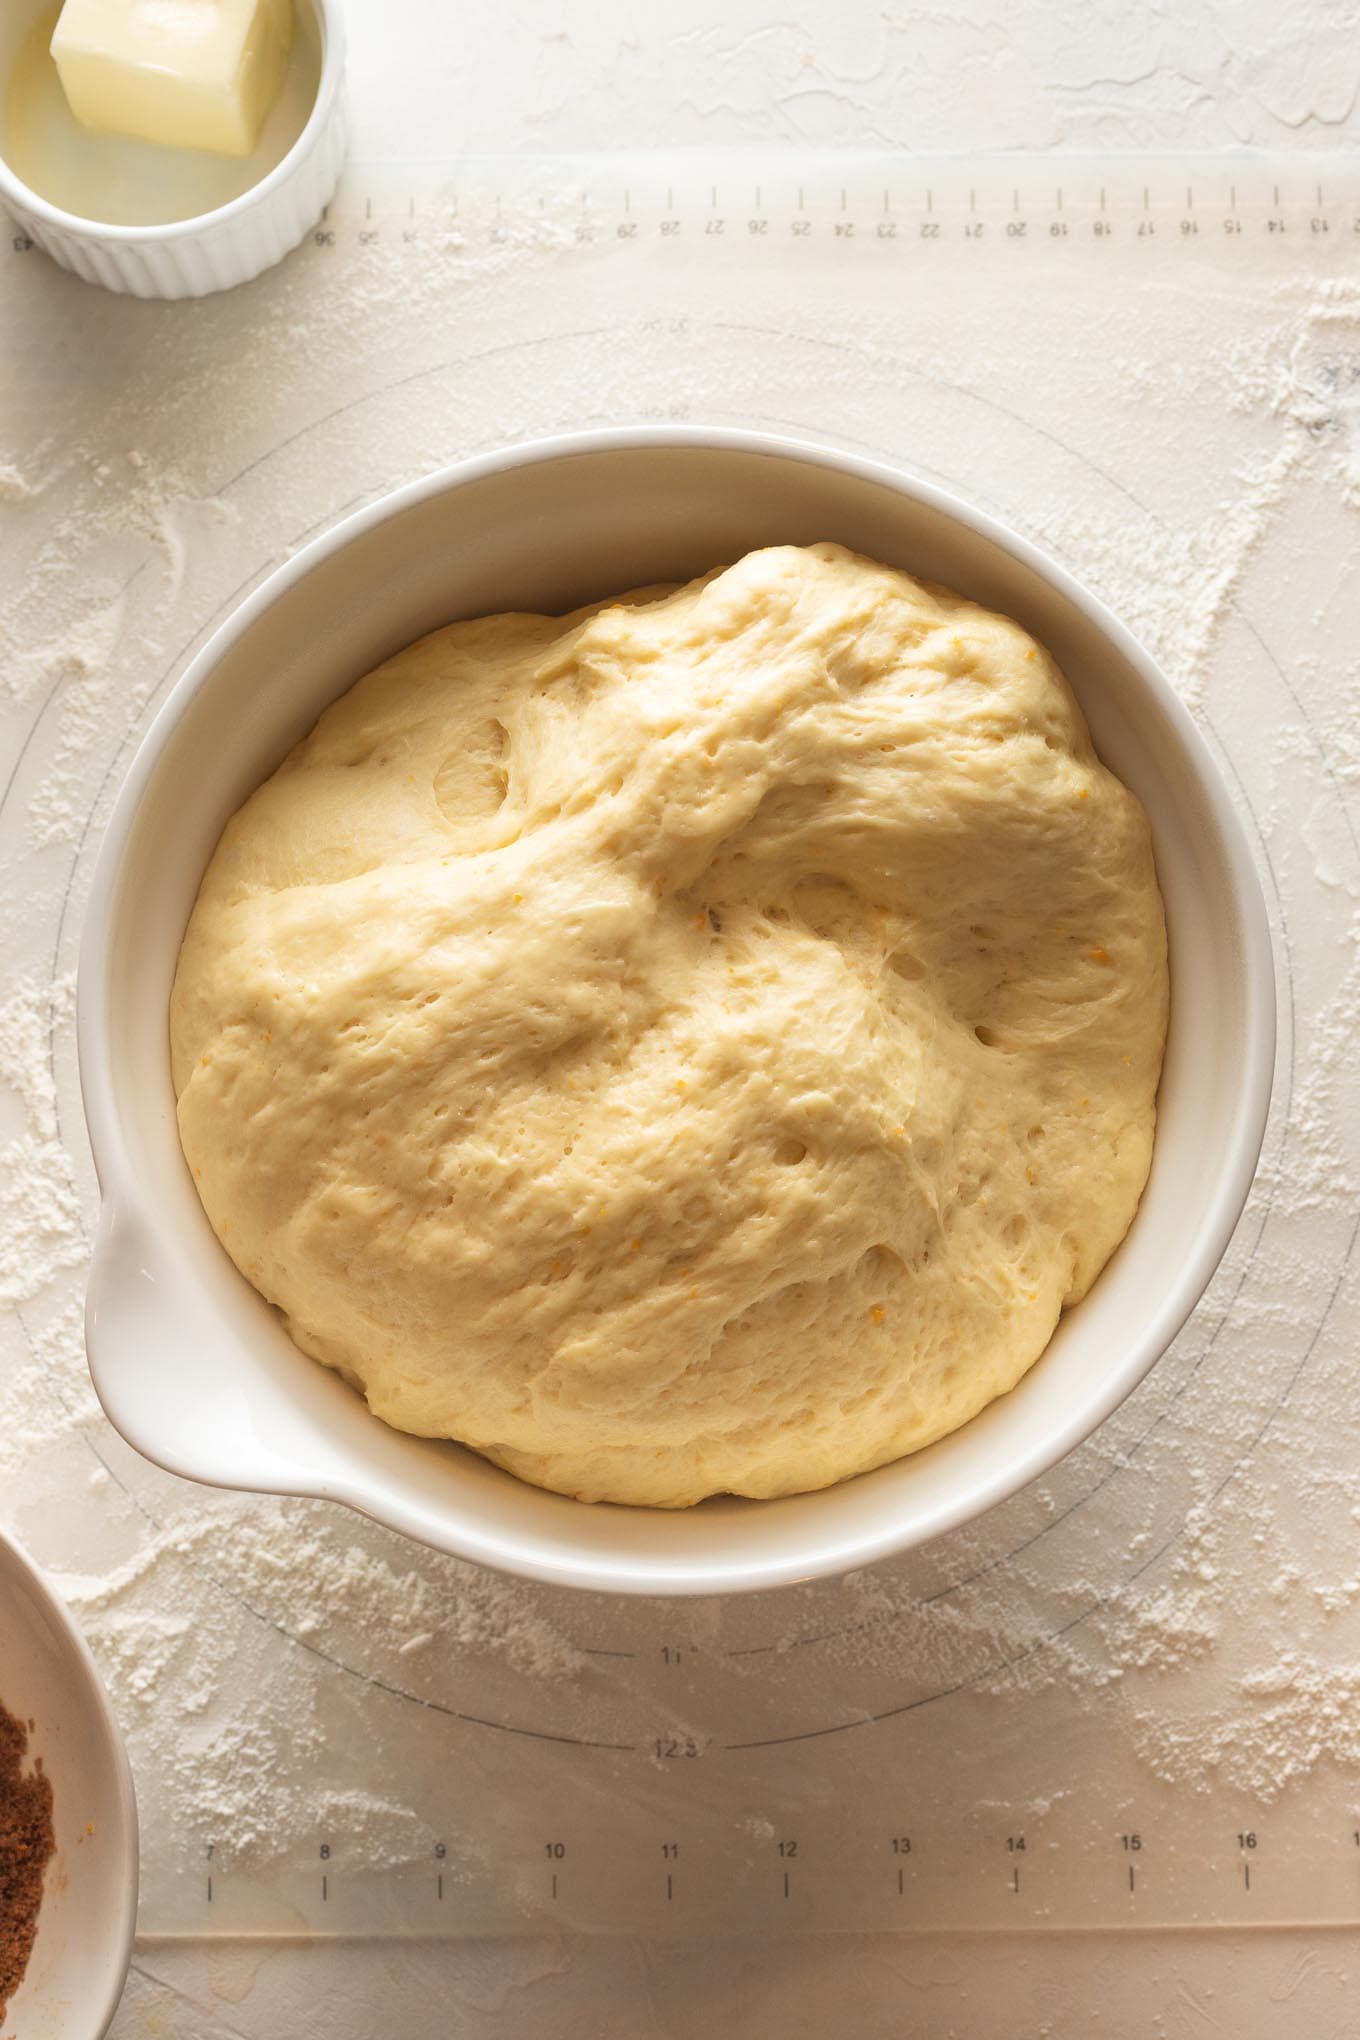 Risen dough for homemade orange sweet rolls.